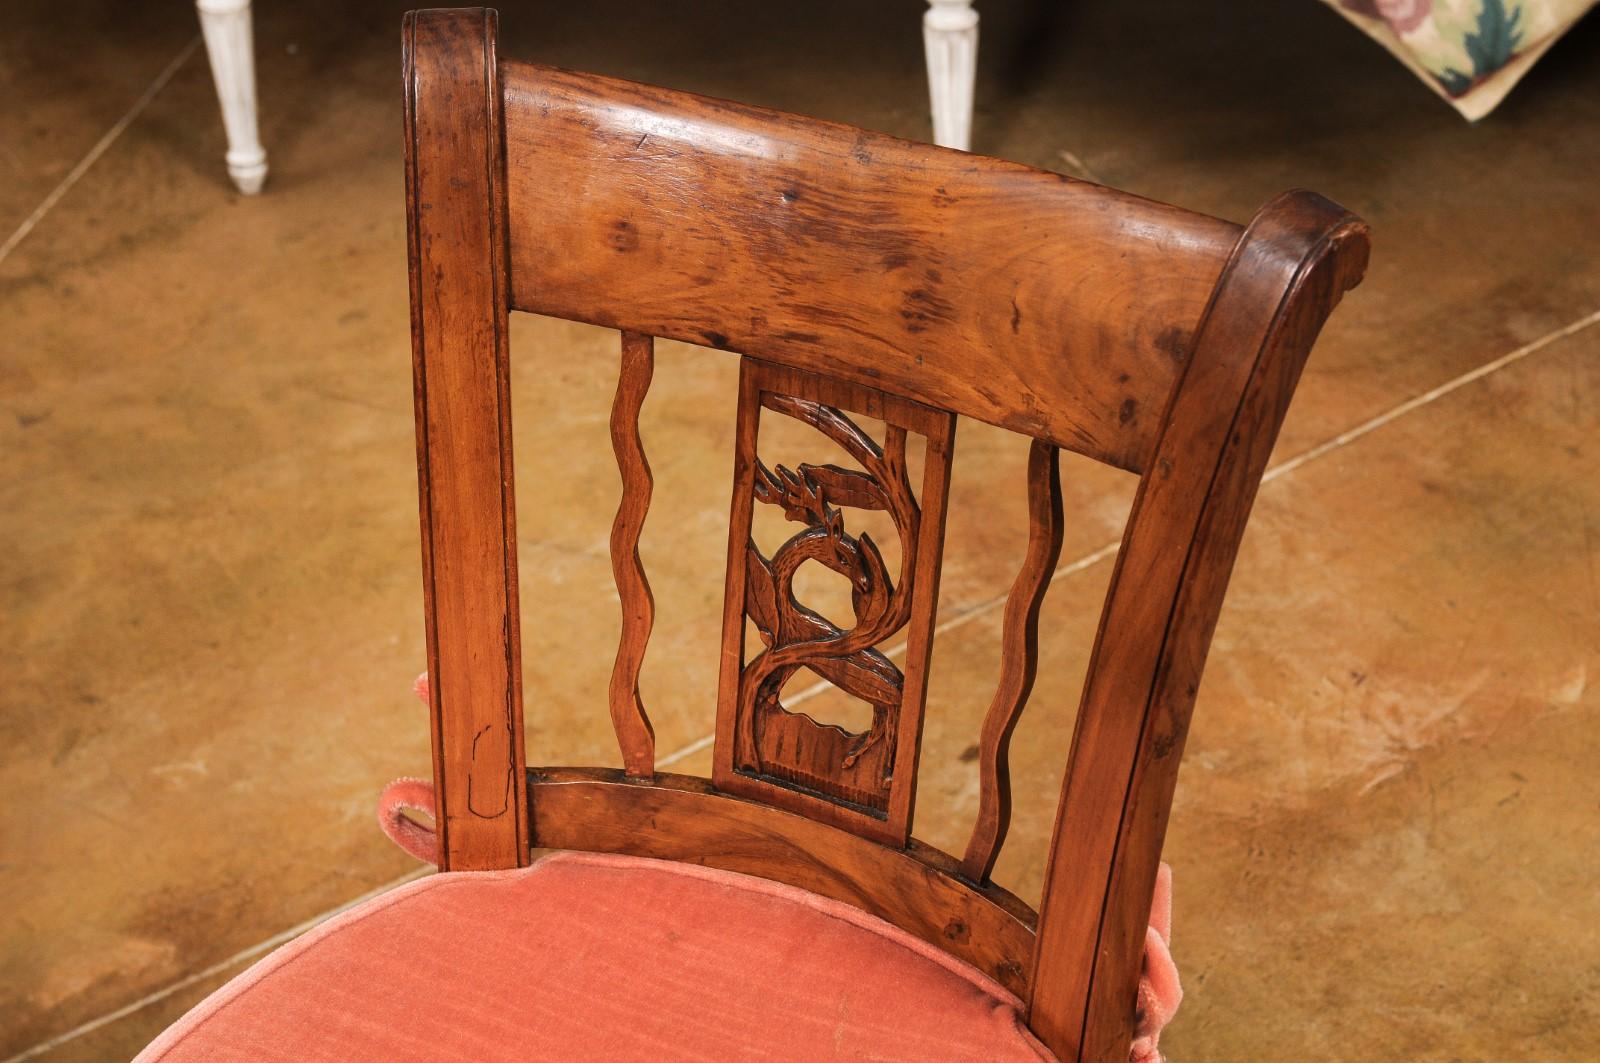 Ein Paar französischer Beistellstühle aus Nussbaum im Directoire-Stil aus dem frühen 19. Jahrhundert, mit ausladenden Rückenlehnen, geschnitzten Hirschleisten, Binsensitzen und kleinen Kissen. Wir haben derzeit drei Paare zur Verfügung, Preis und